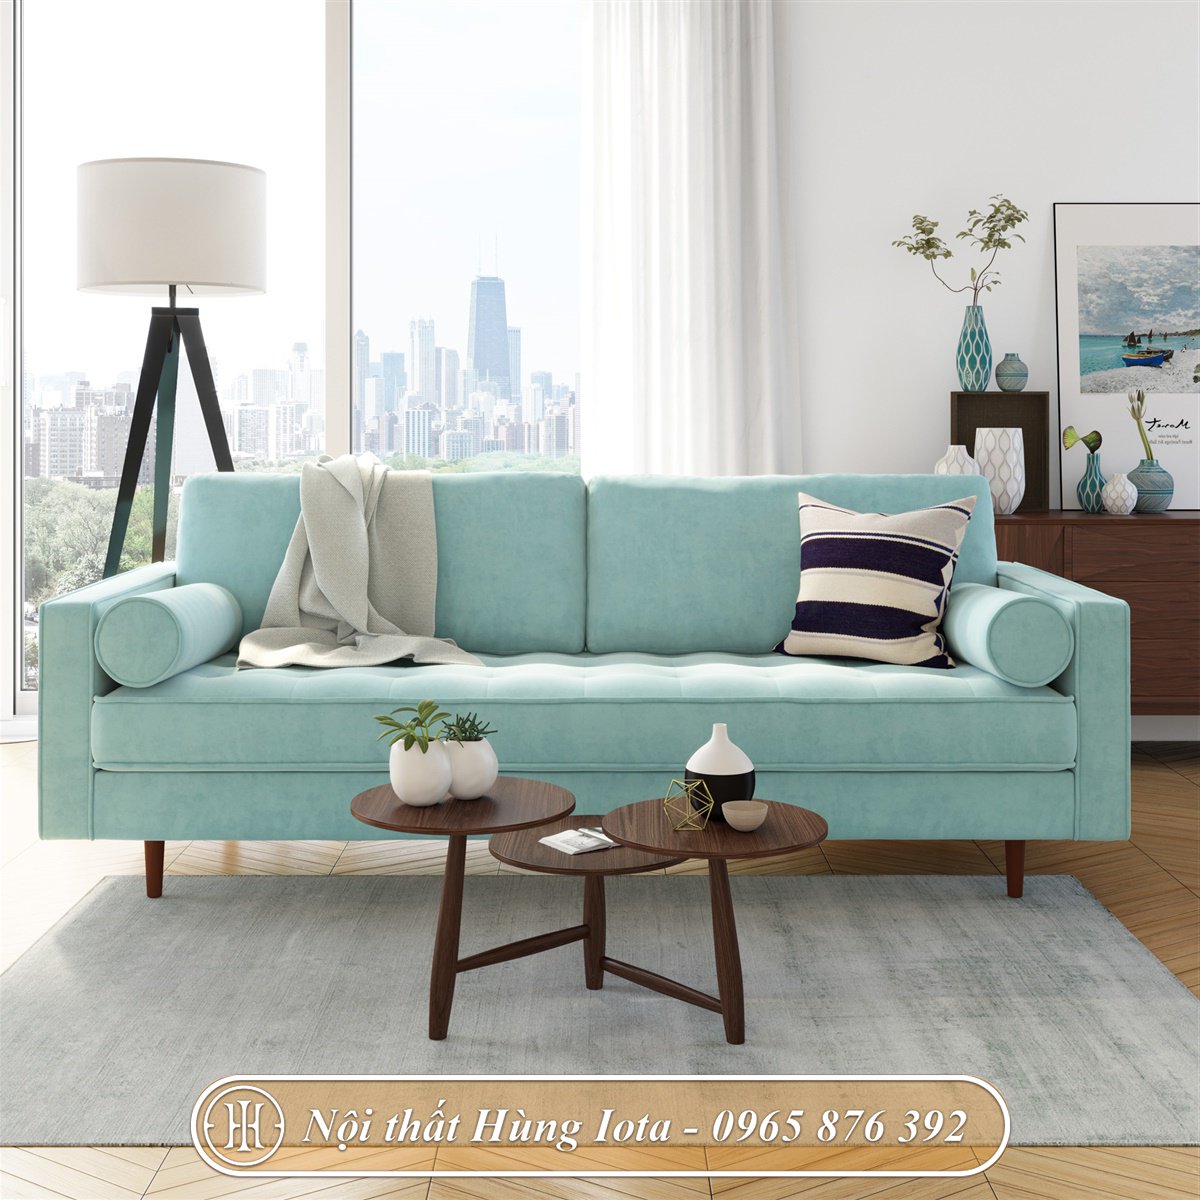 Ghế sofa nhung màu xanh lơ cho gia đình